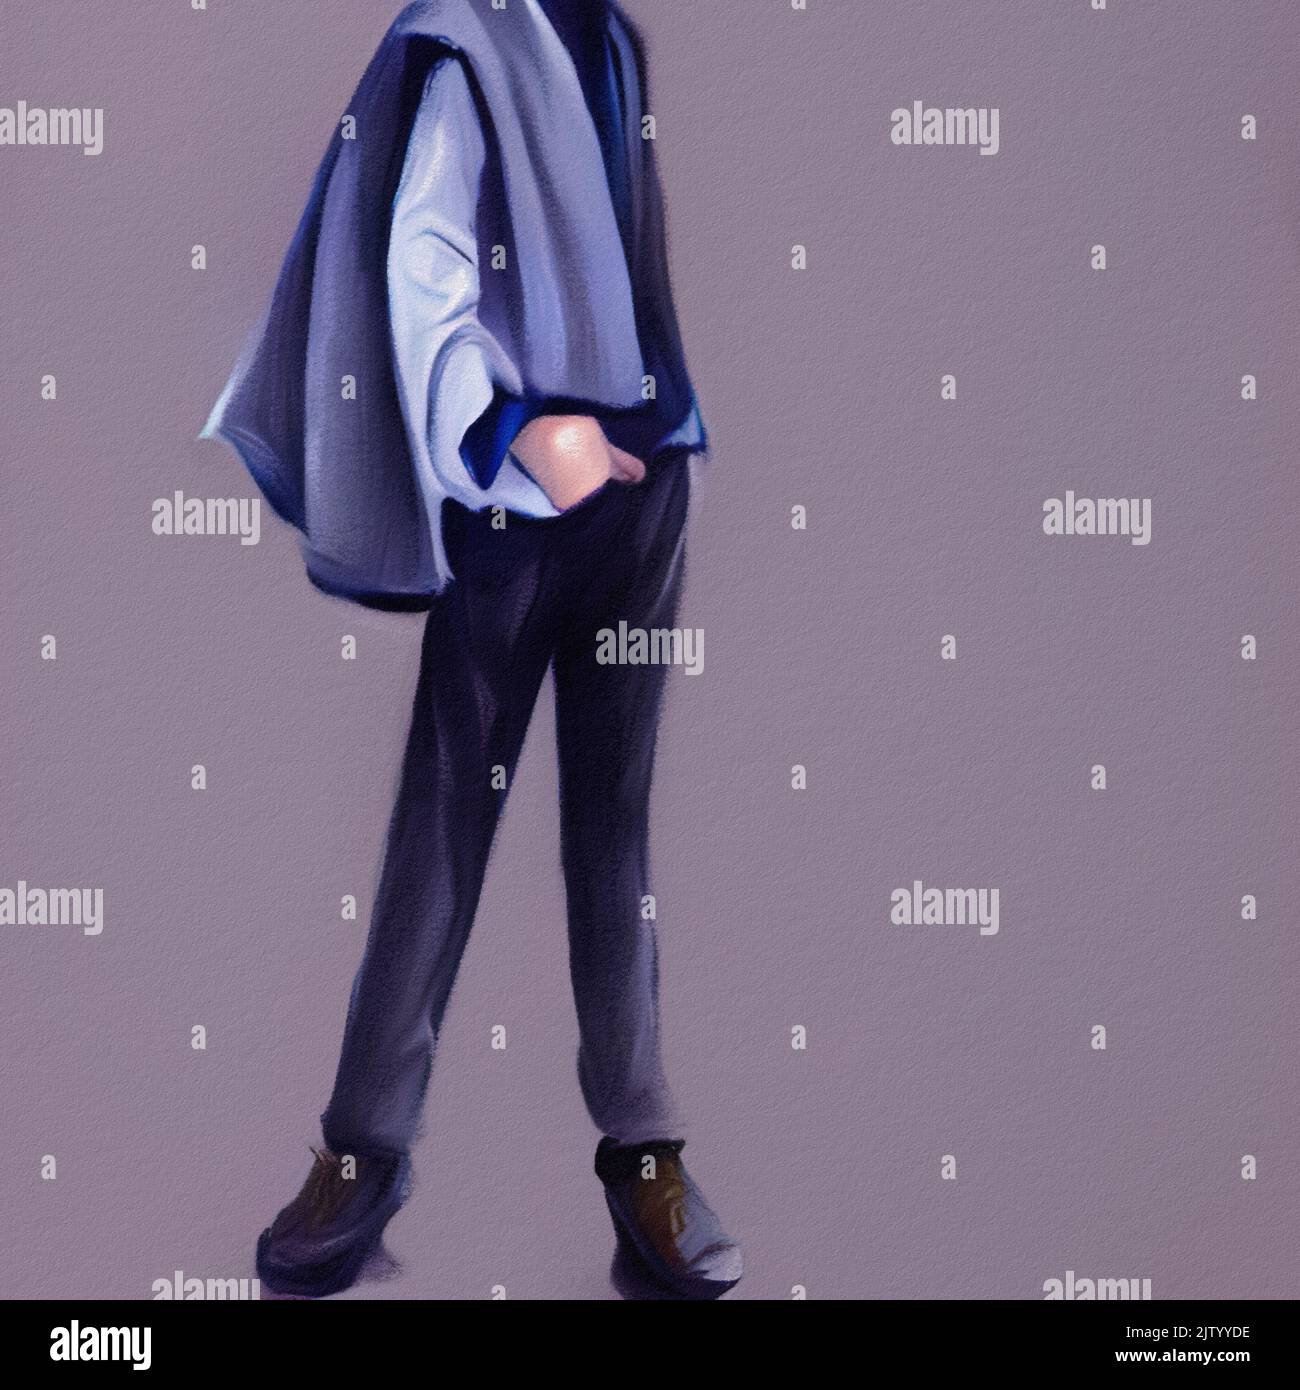 Stylish dressed anime boy Stock Illustration